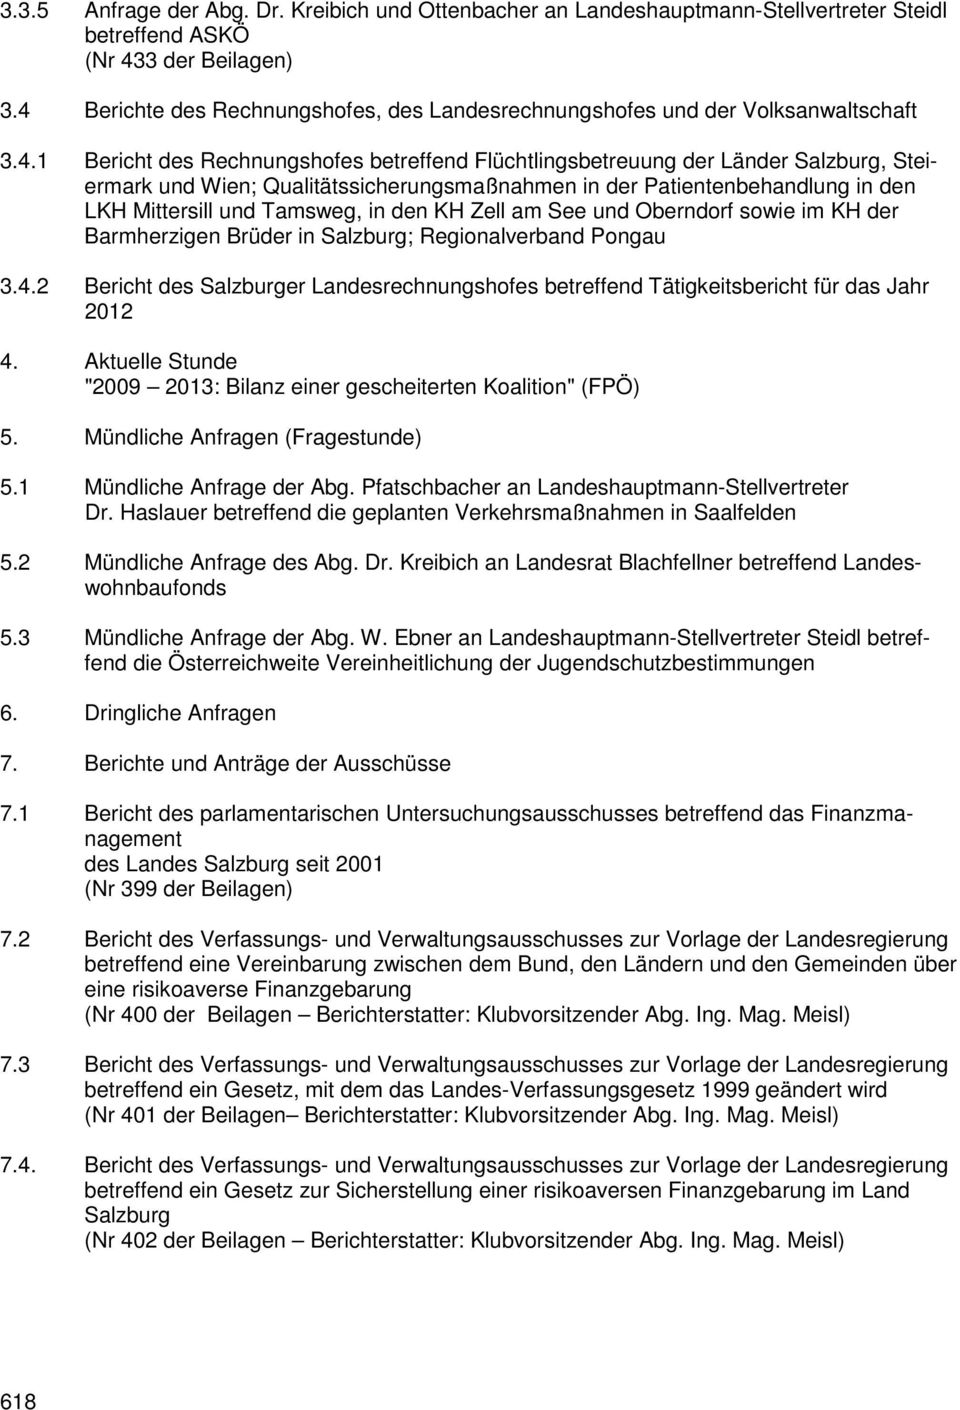 Qualitätssicherungsmaßnahmen in der Patientenbehandlung in den LKH Mittersill und Tamsweg, in den KH Zell am See und Oberndorf sowie im KH der Barmherzigen Brüder in Salzburg; Regionalverband Pongau